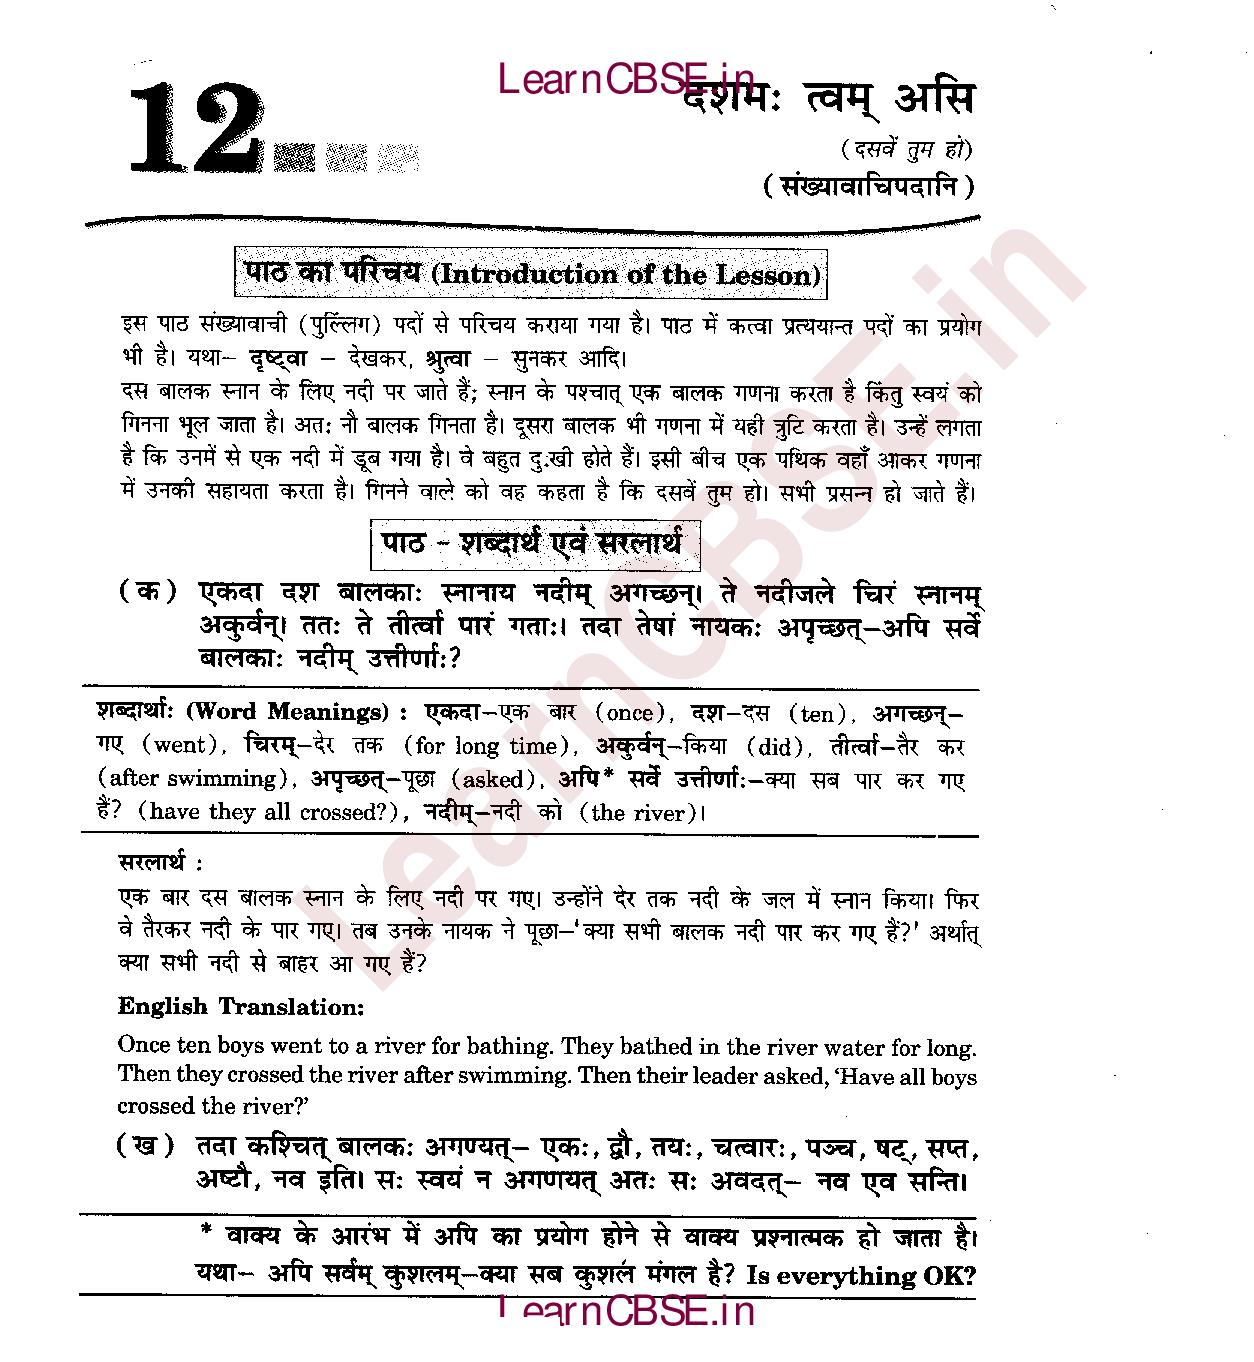 NCERT Solutions for Class 6 Sanskrit Chapter 9